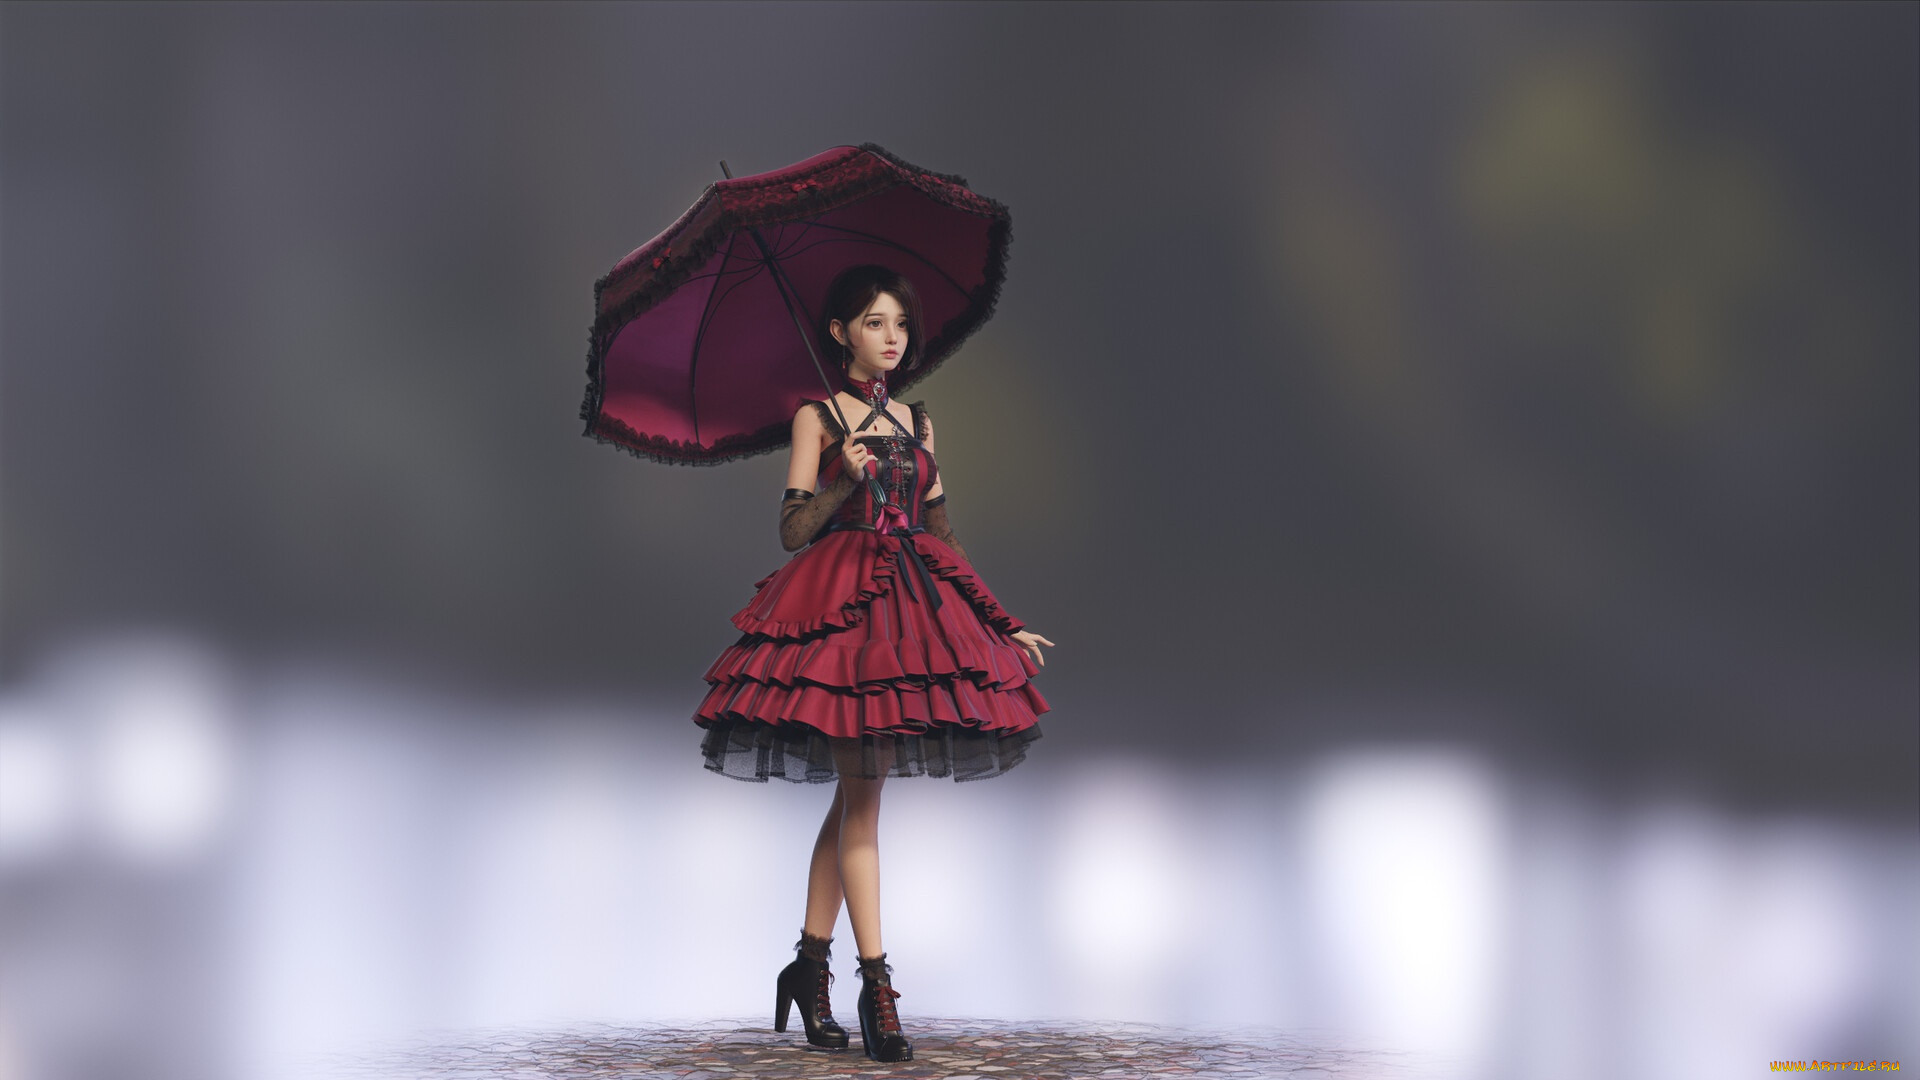 Asian Women Artwork Digital Art Umbrella Women With Umbrella Dress Red Dress Heels Standing Black He 1920x1080